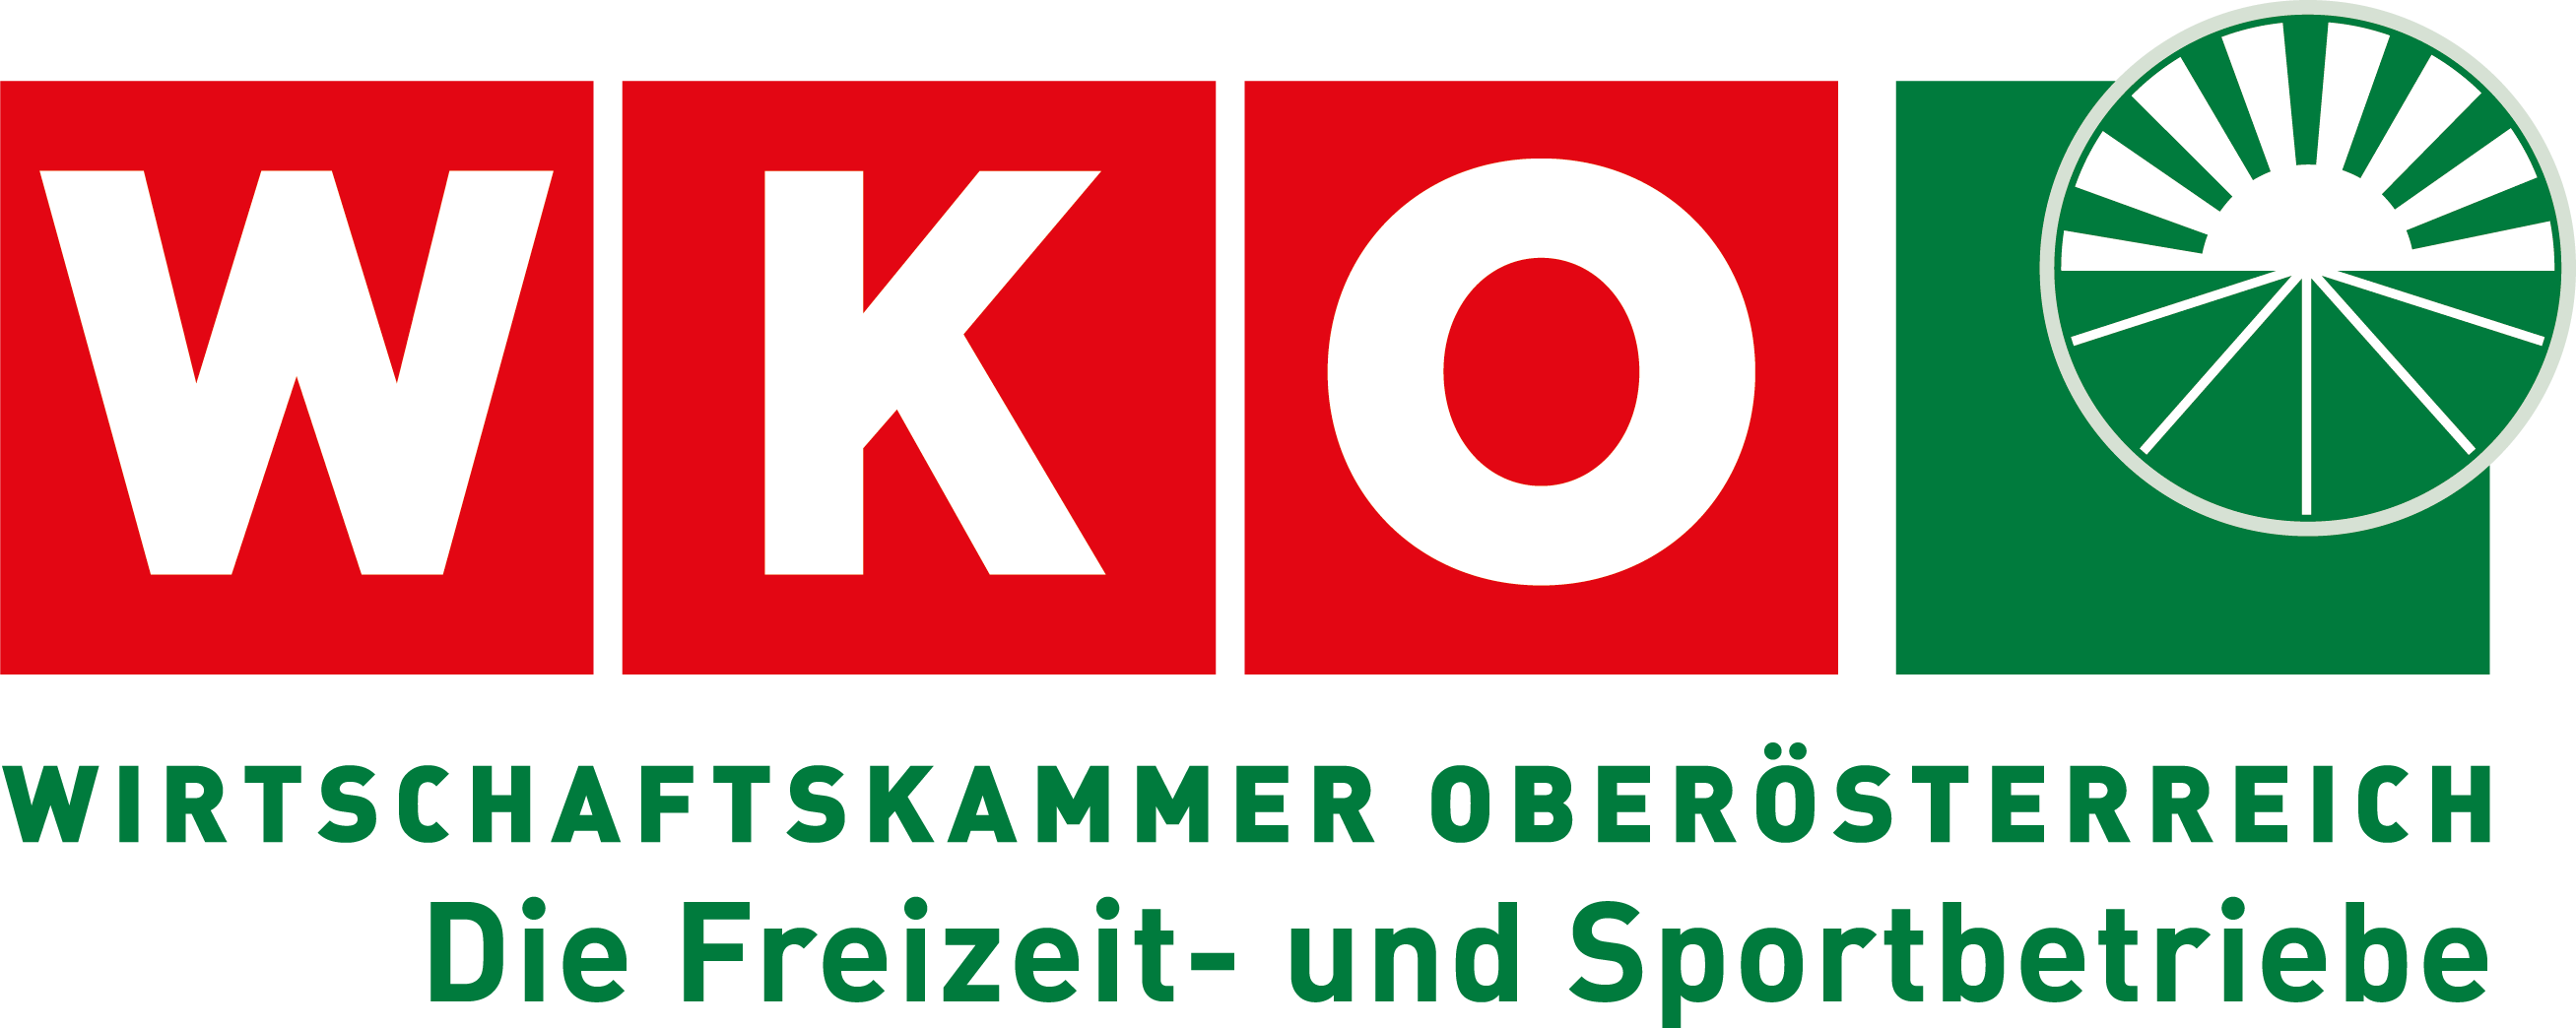 Wirtschaftskammer Oberösterreich - Freizeitbetriebe Logo